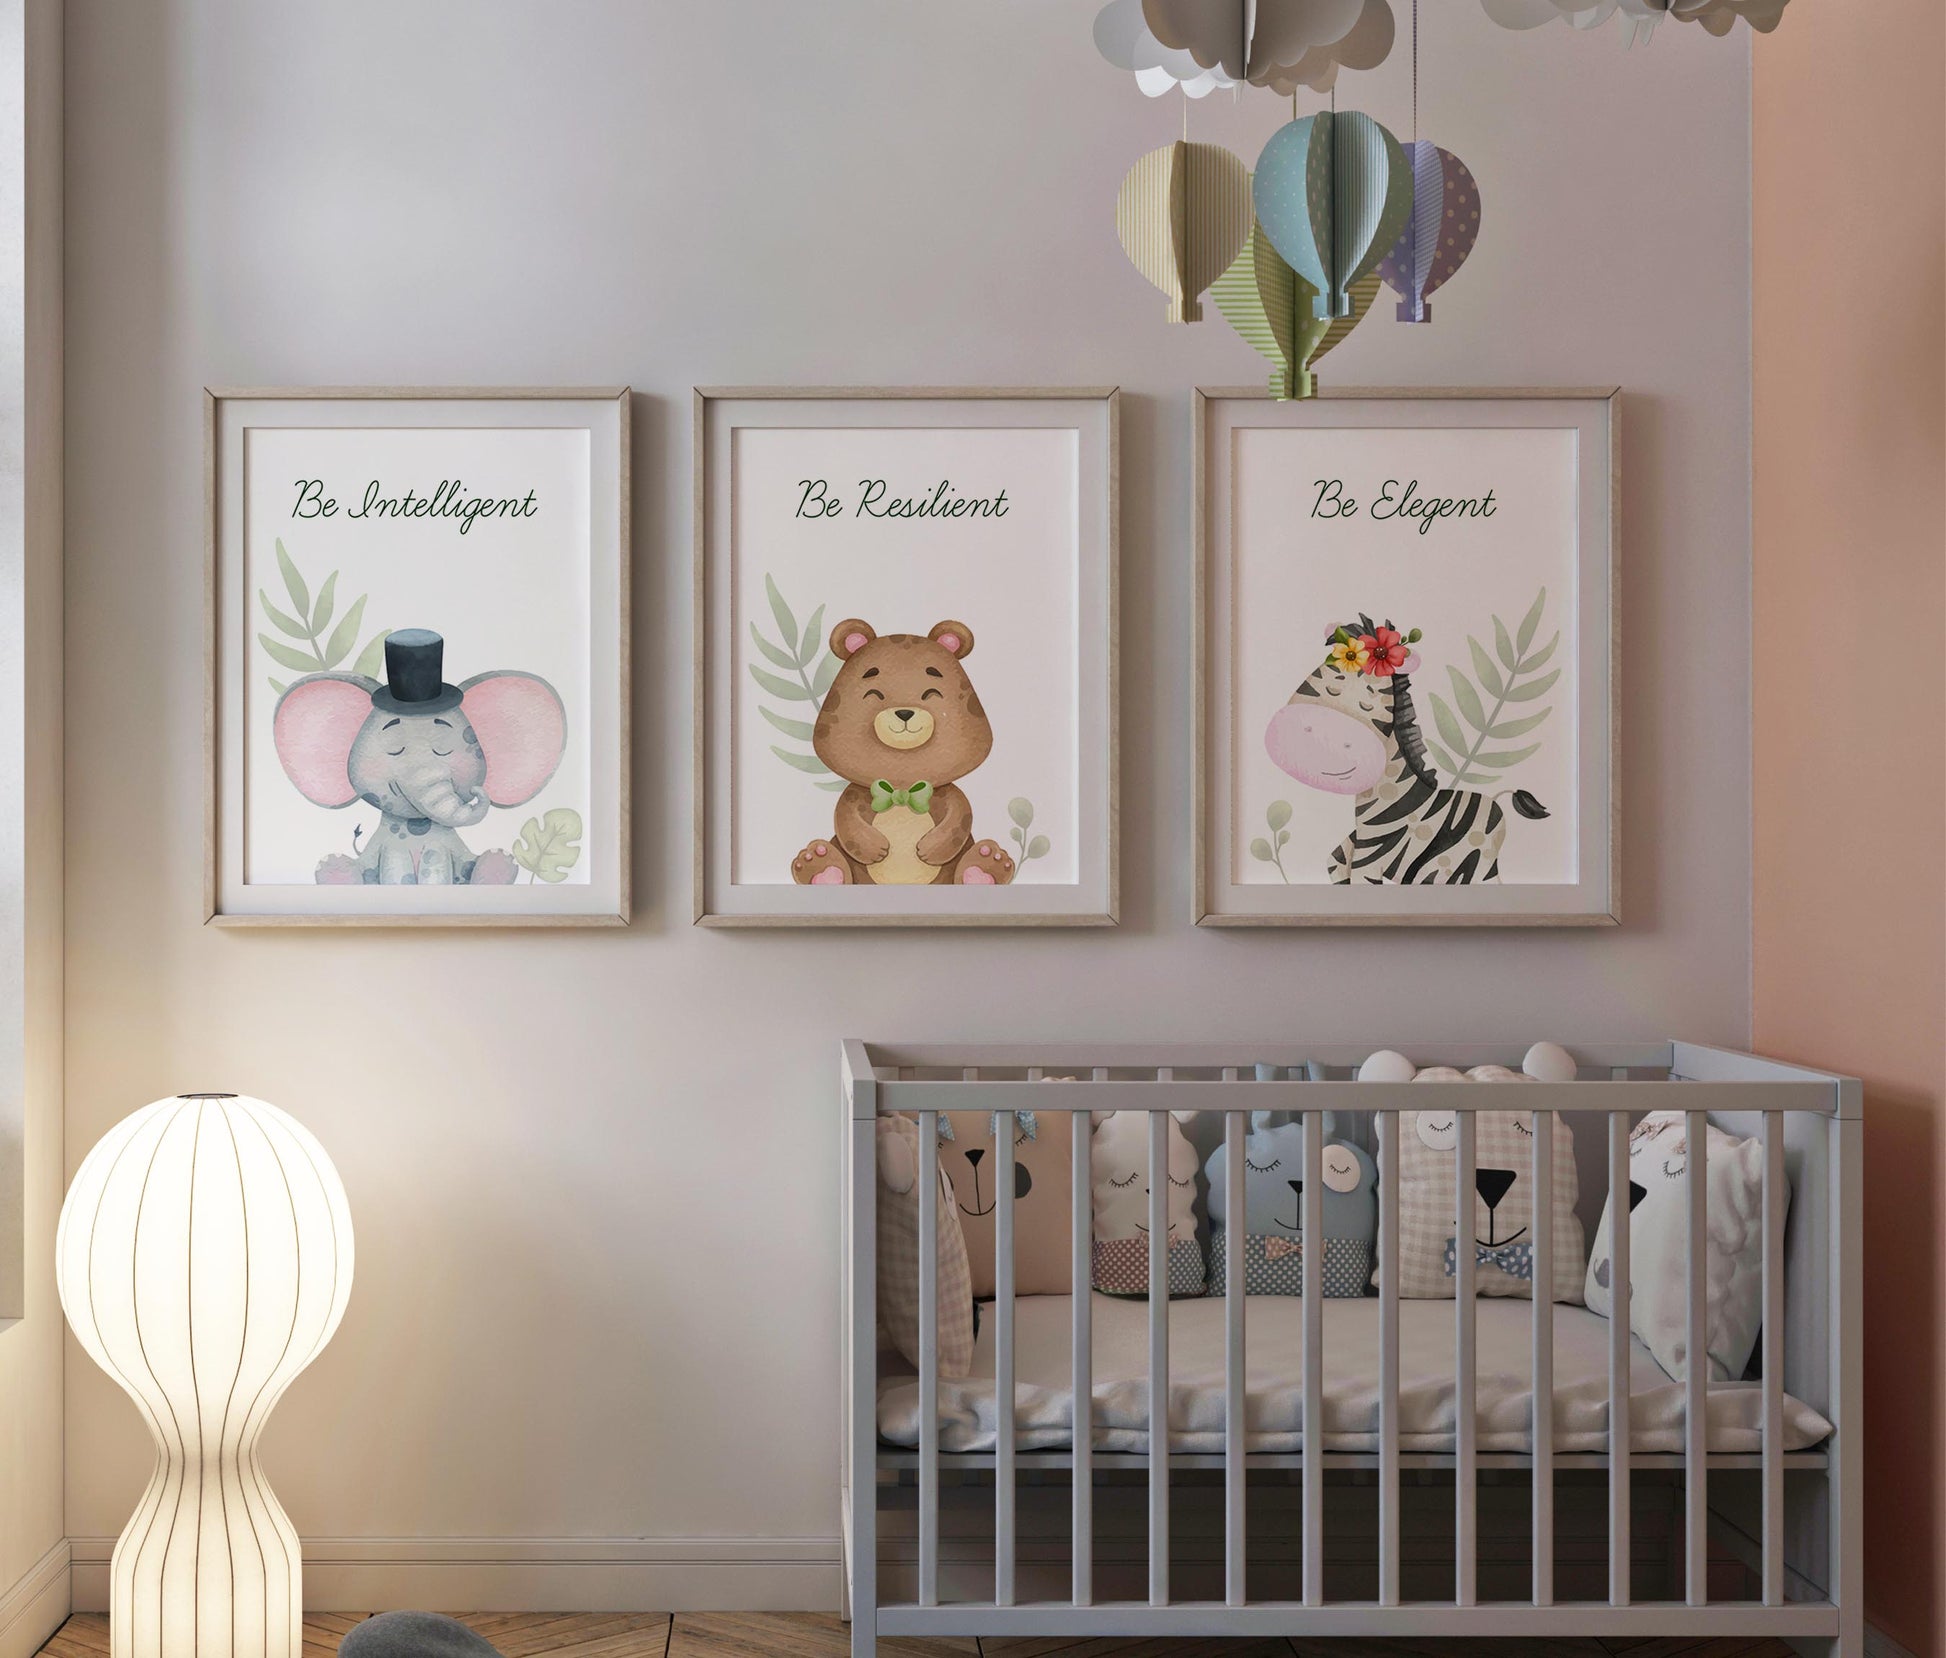 Set of 3 adorable animal prints for kids' room decor.